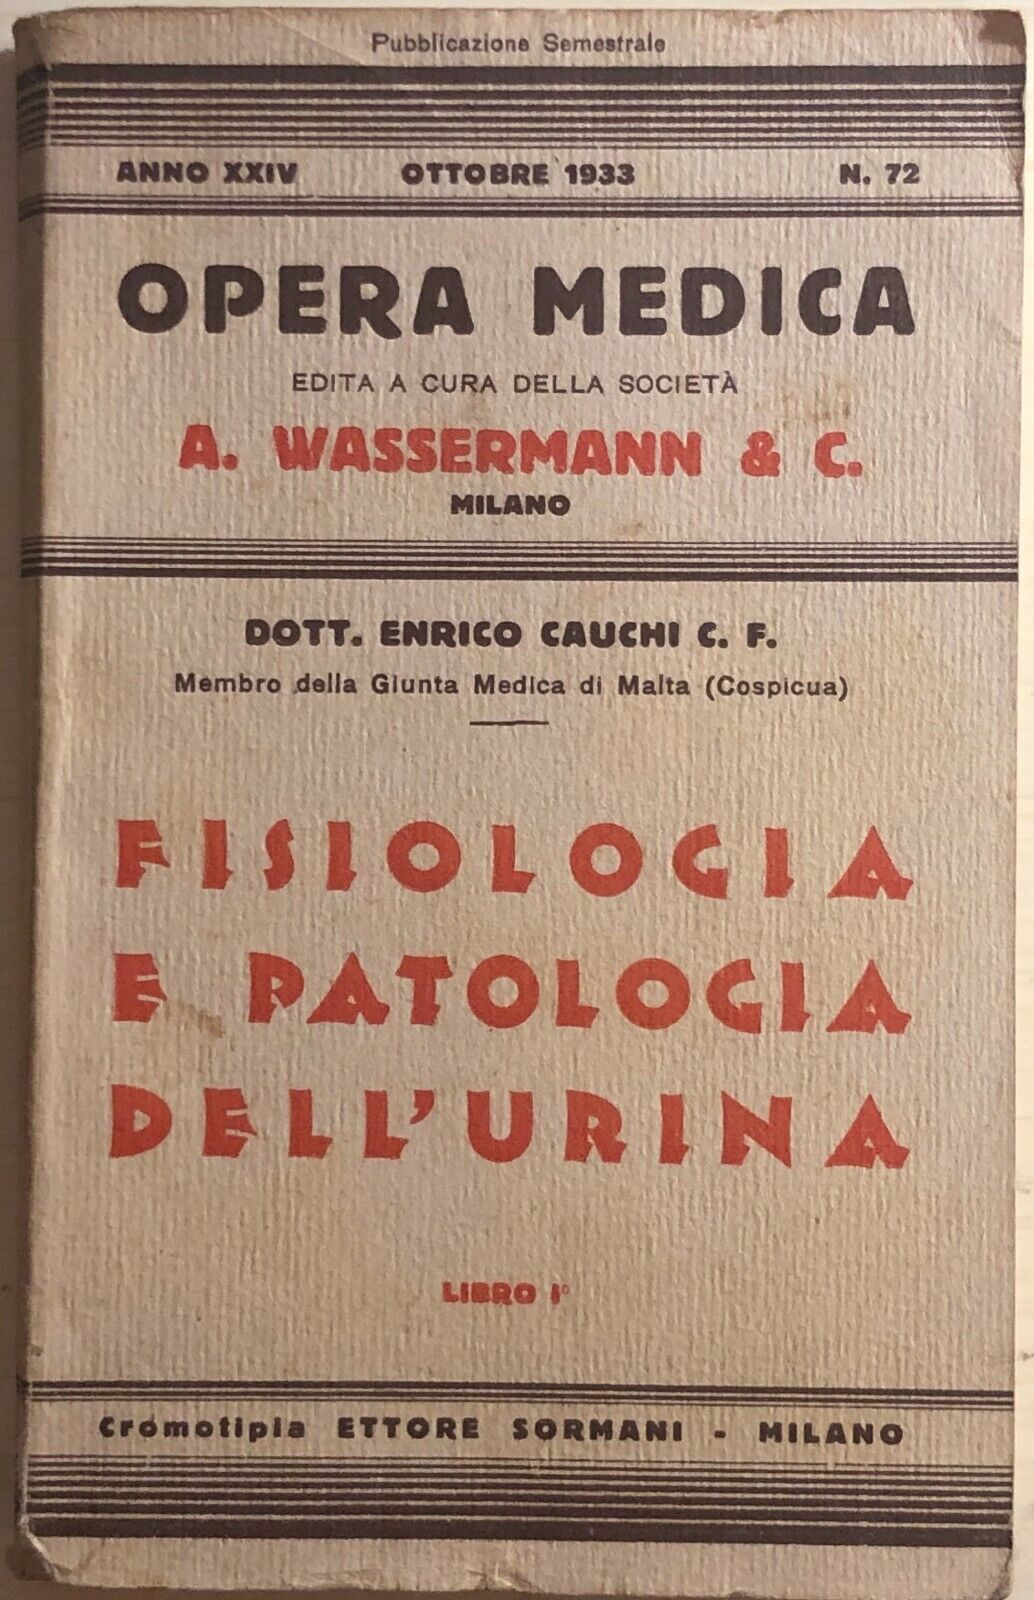 Opera medica nr.72 1933 Libro I di AA.VV., Ettore Sormani Milano